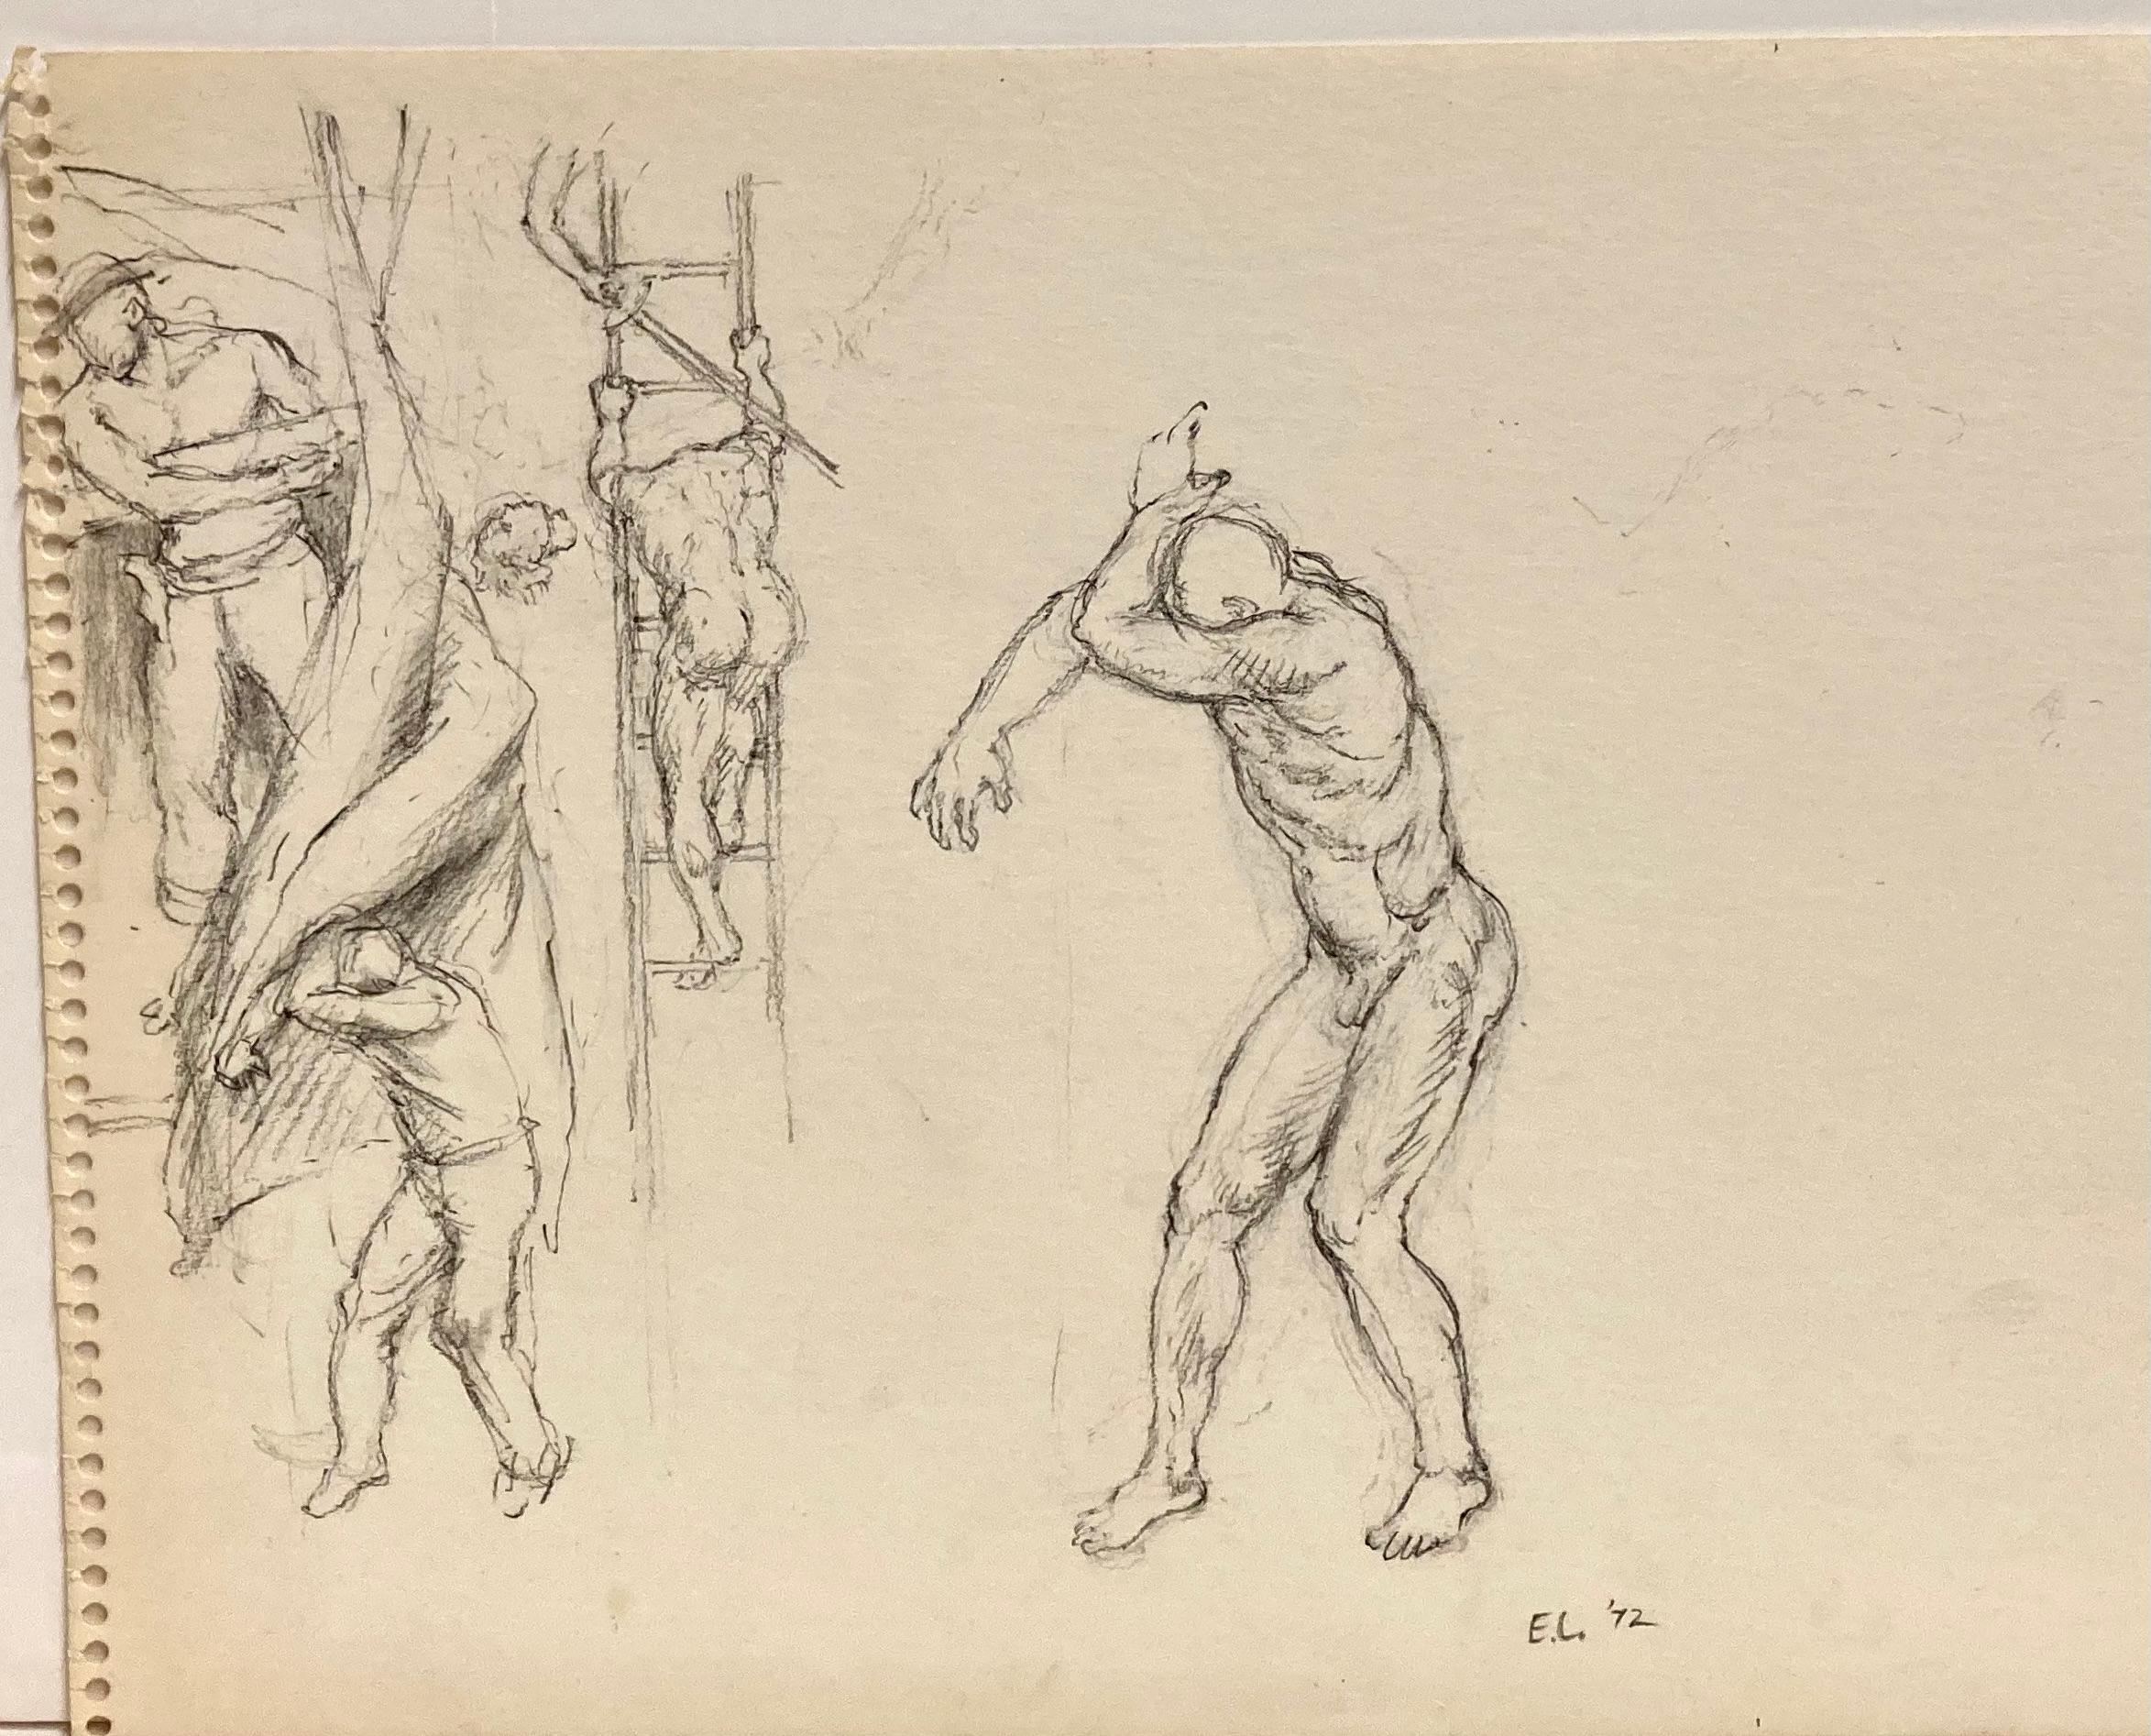 Edward Laning, (Male Figures) 1